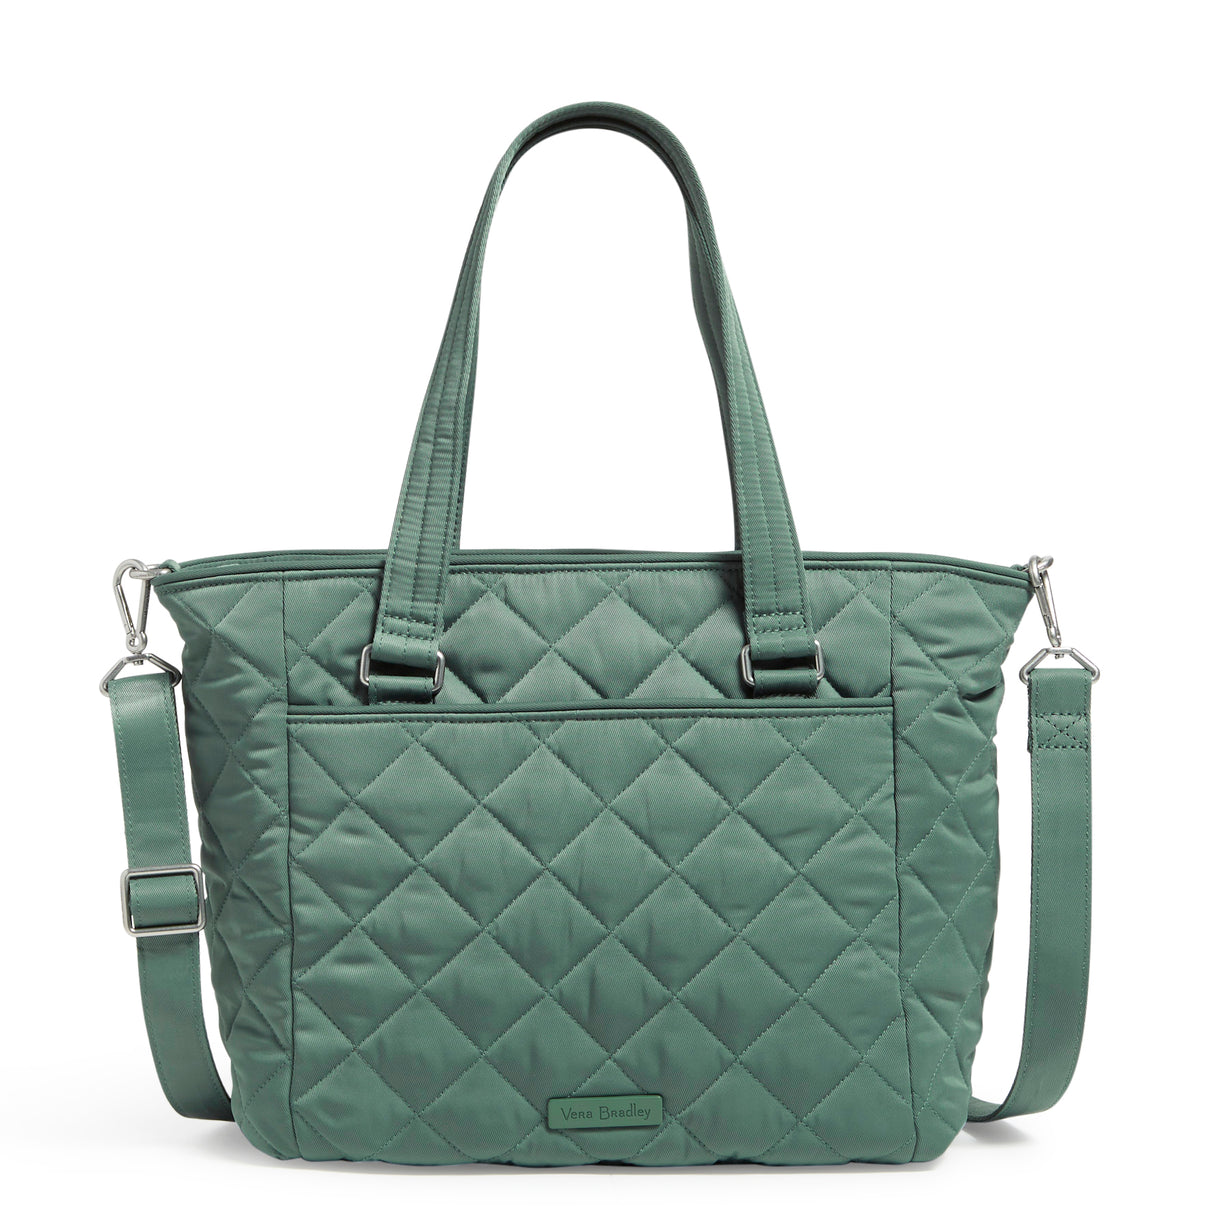 Vera Bradley Multi Strap Shoulder Bag In Olive Leaf Pattern